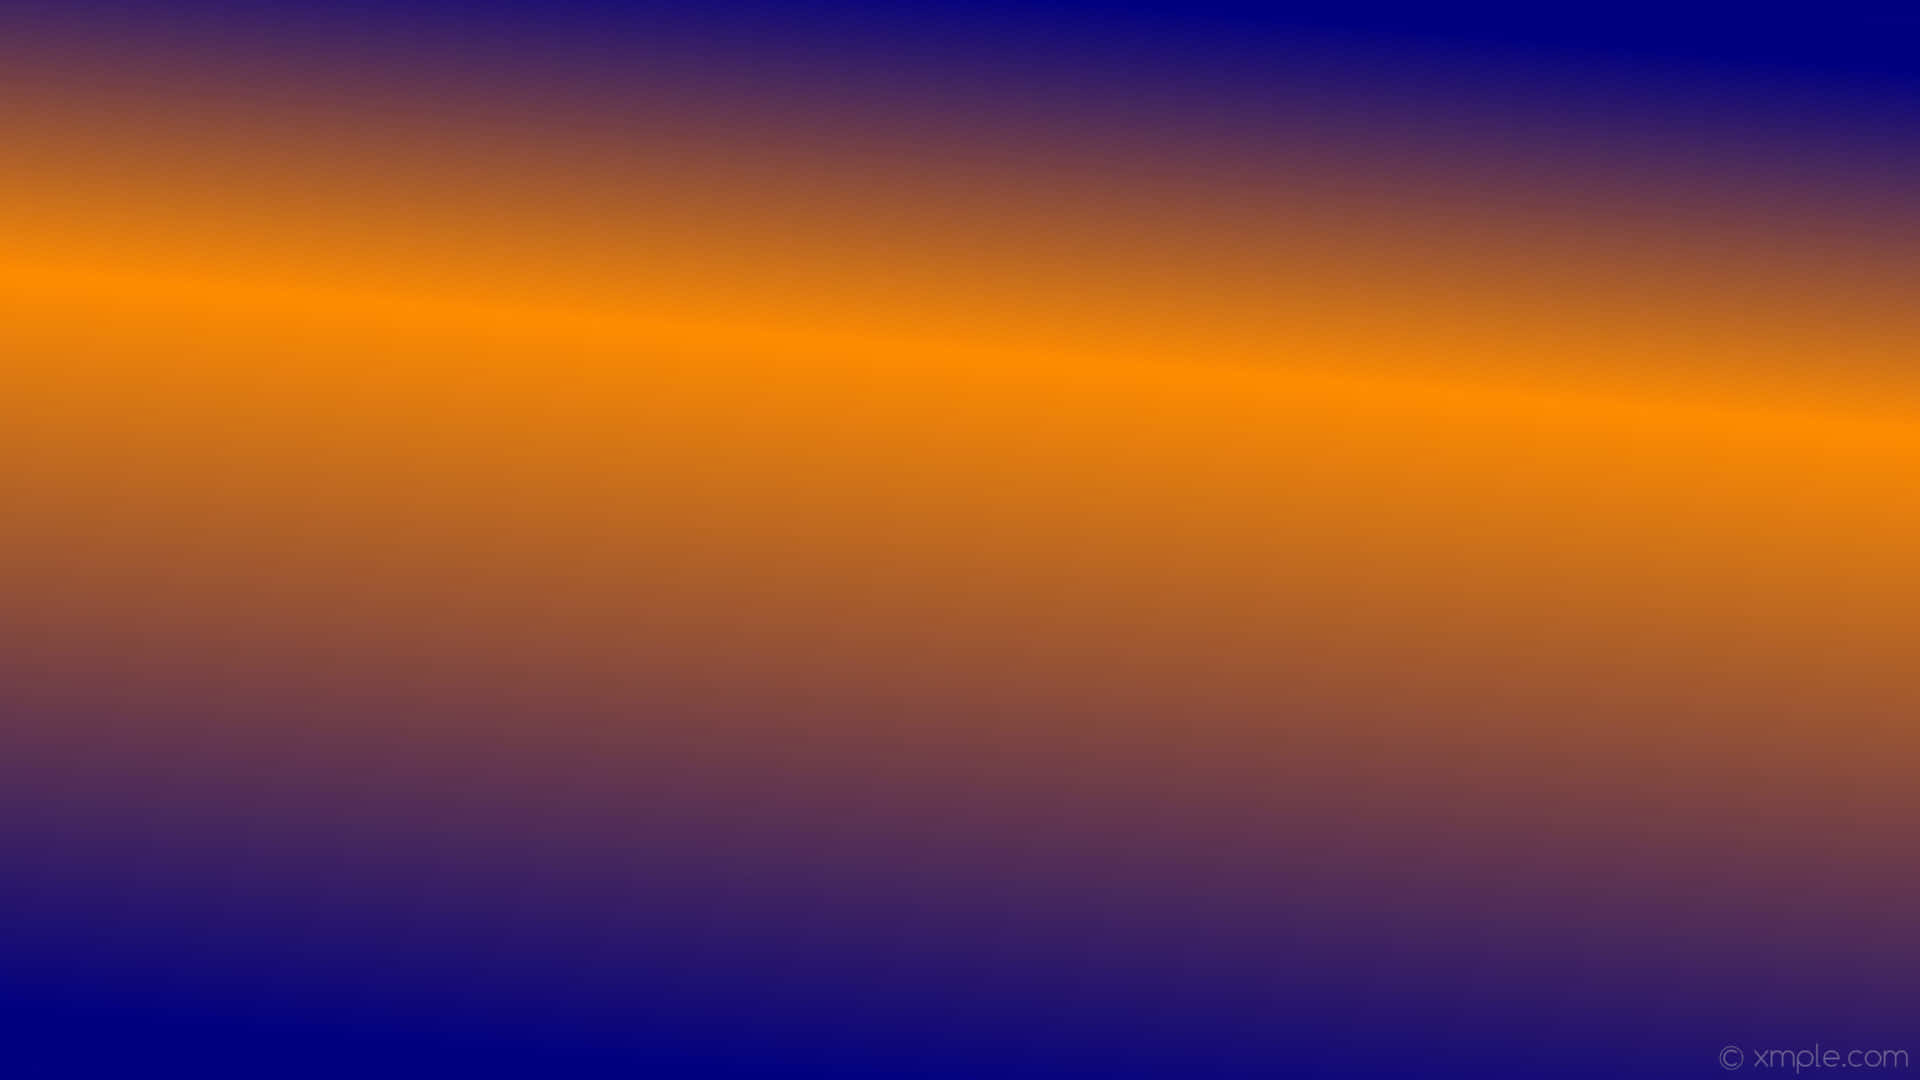 Unfondo Abstracto De Color Azul Y Naranja